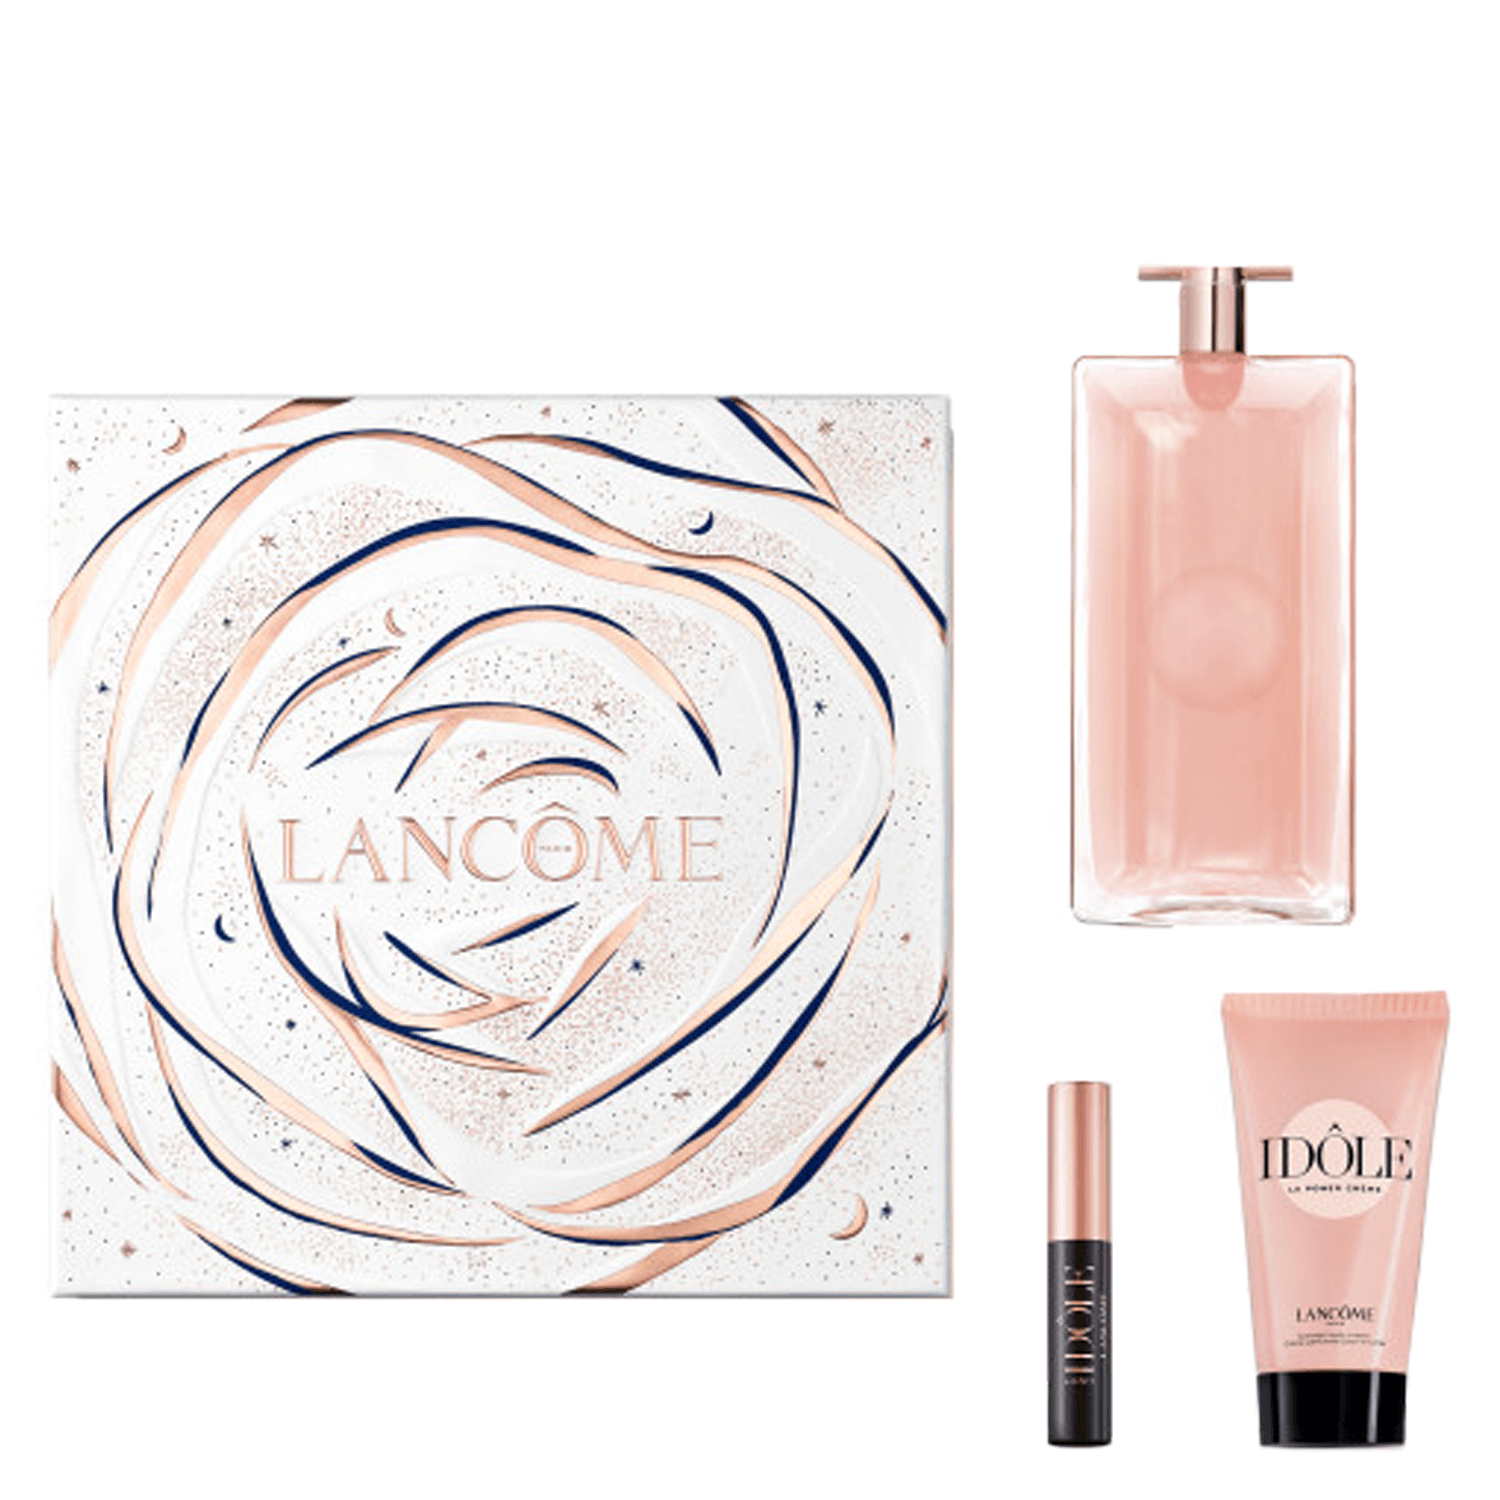 Product image from Lancôme Special - Idôle Eau de Parfum & Mascara Set